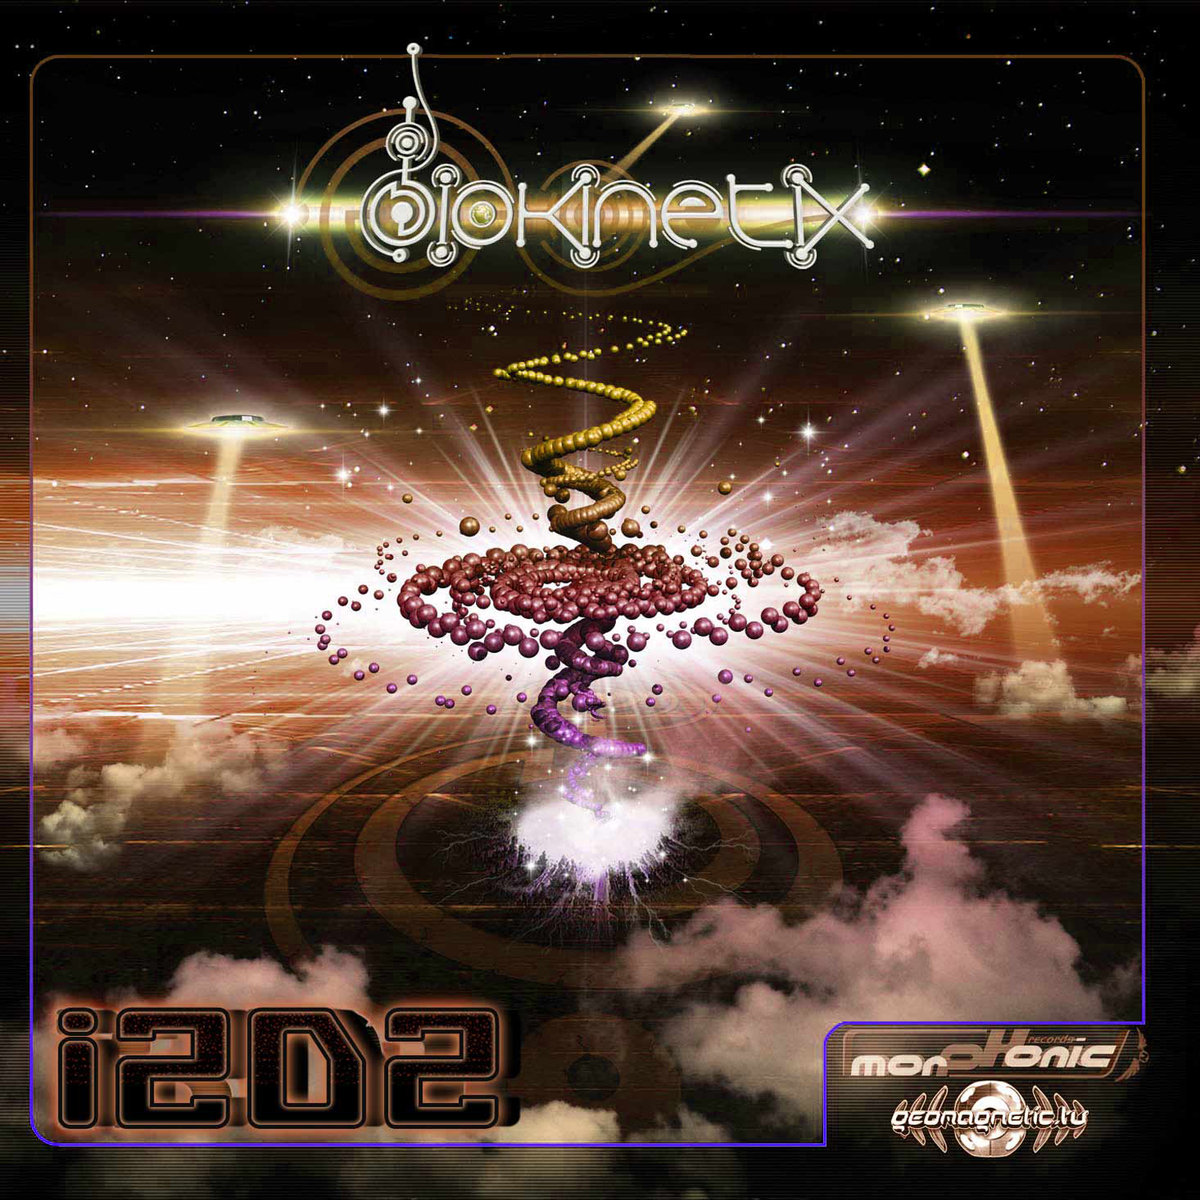 Biokinetix - Hyper @ 'I2D2' album (electronic, goa)